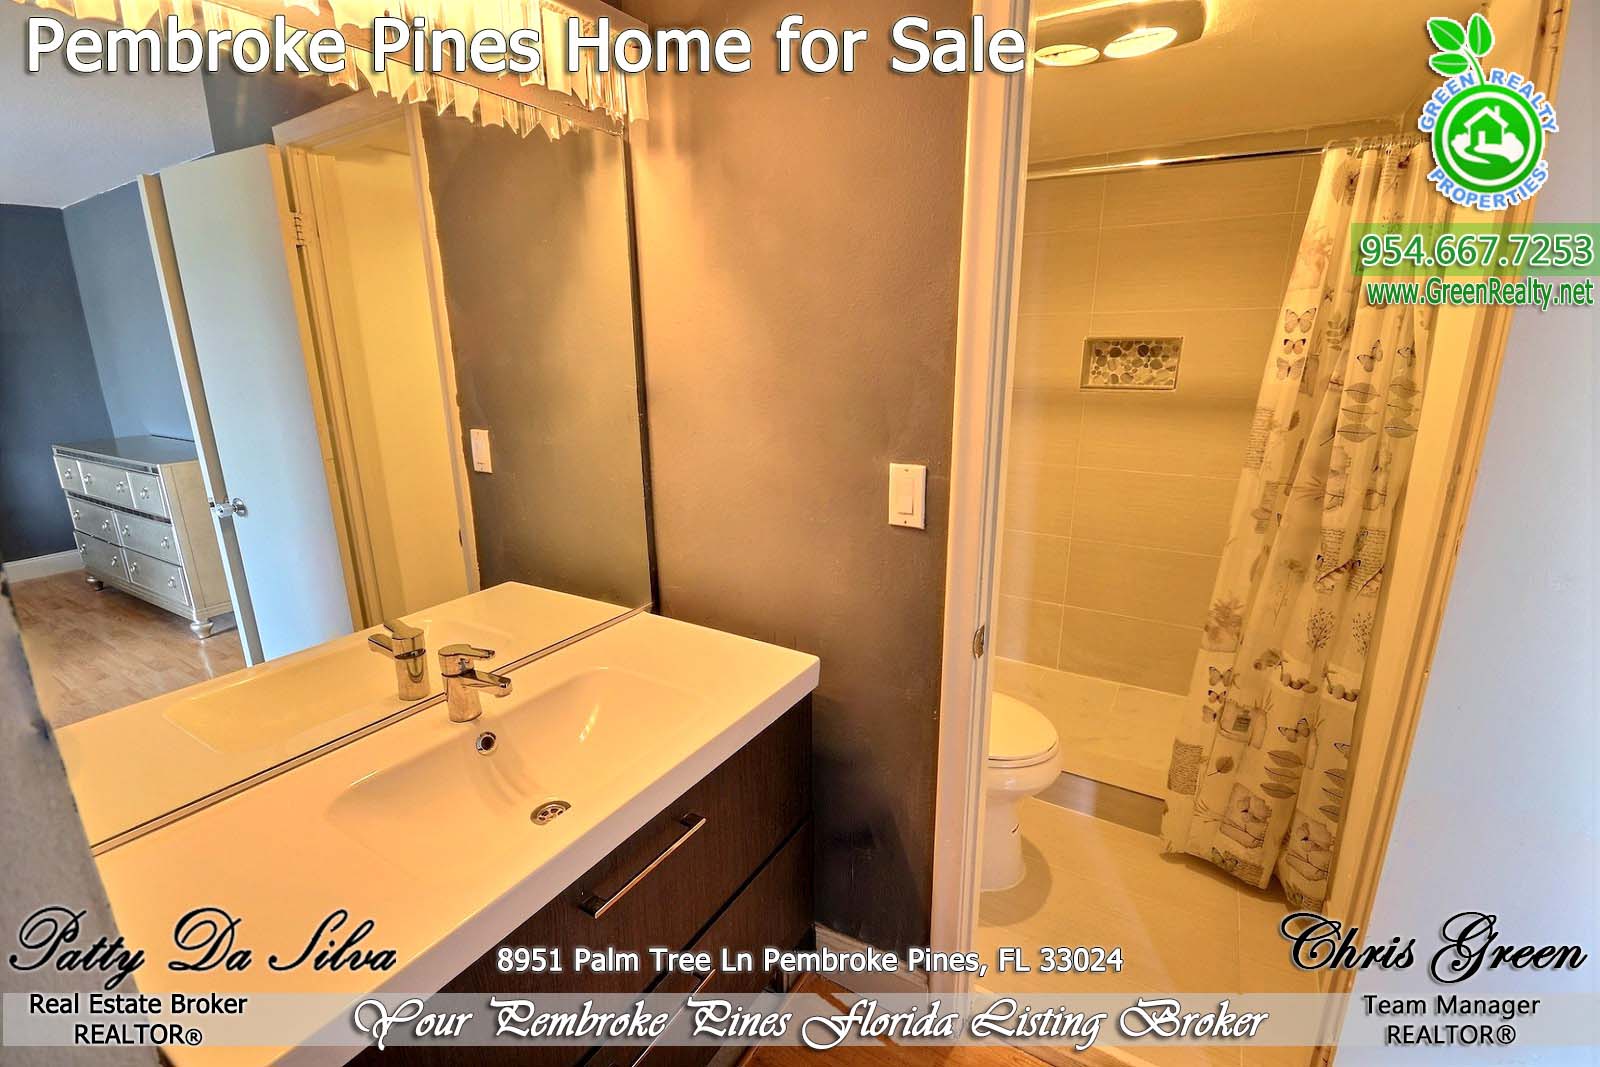 Pembroke Pines Homes For Sale - 8951 Palm Tree Lane (20)